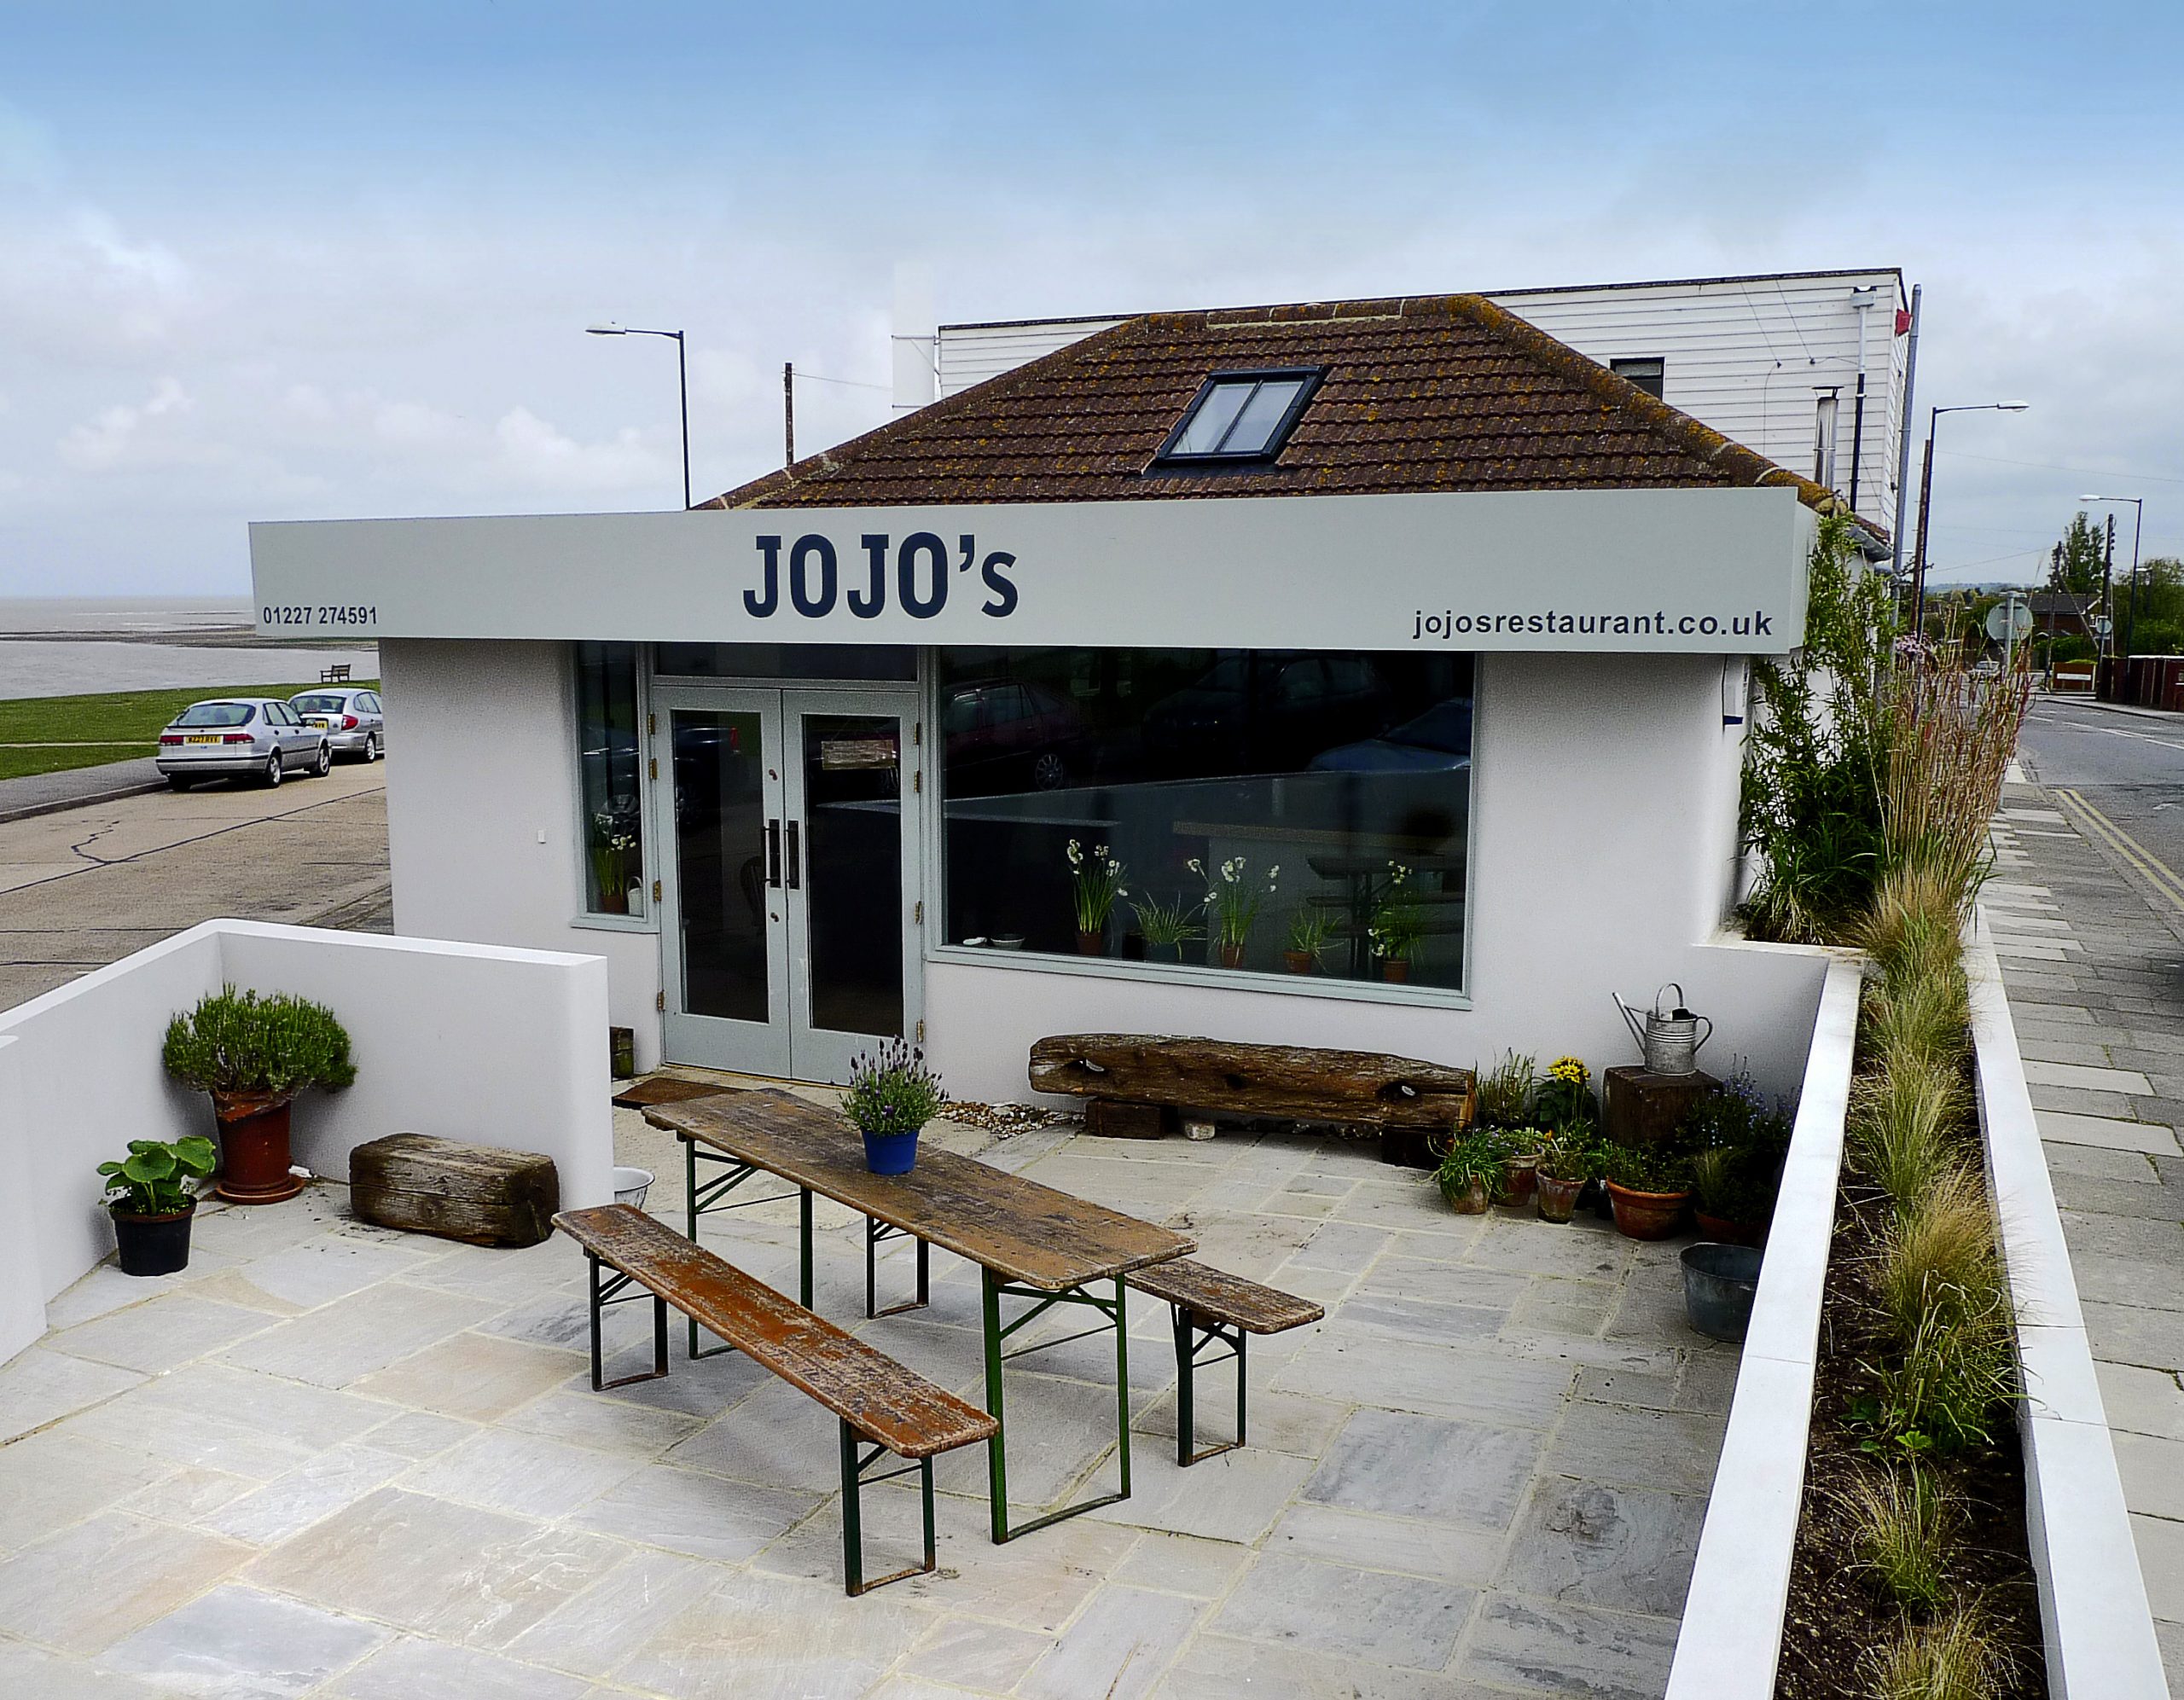 The exterior of Jojo's Restaurant in Kent